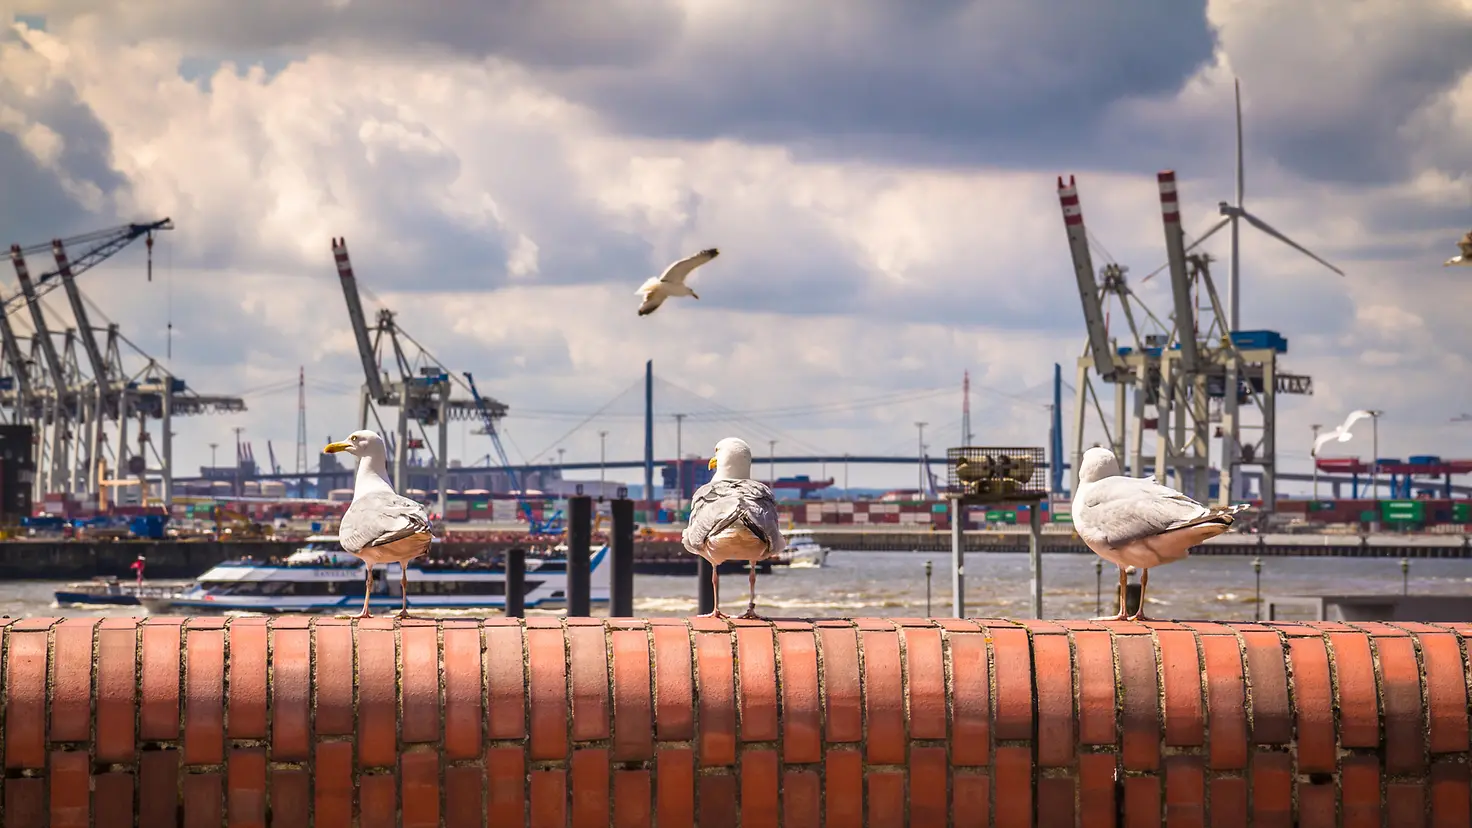 Möwen sitzen auf einer Mauer, im Hintergrund ist der Hamburger Hafen zu sehen.